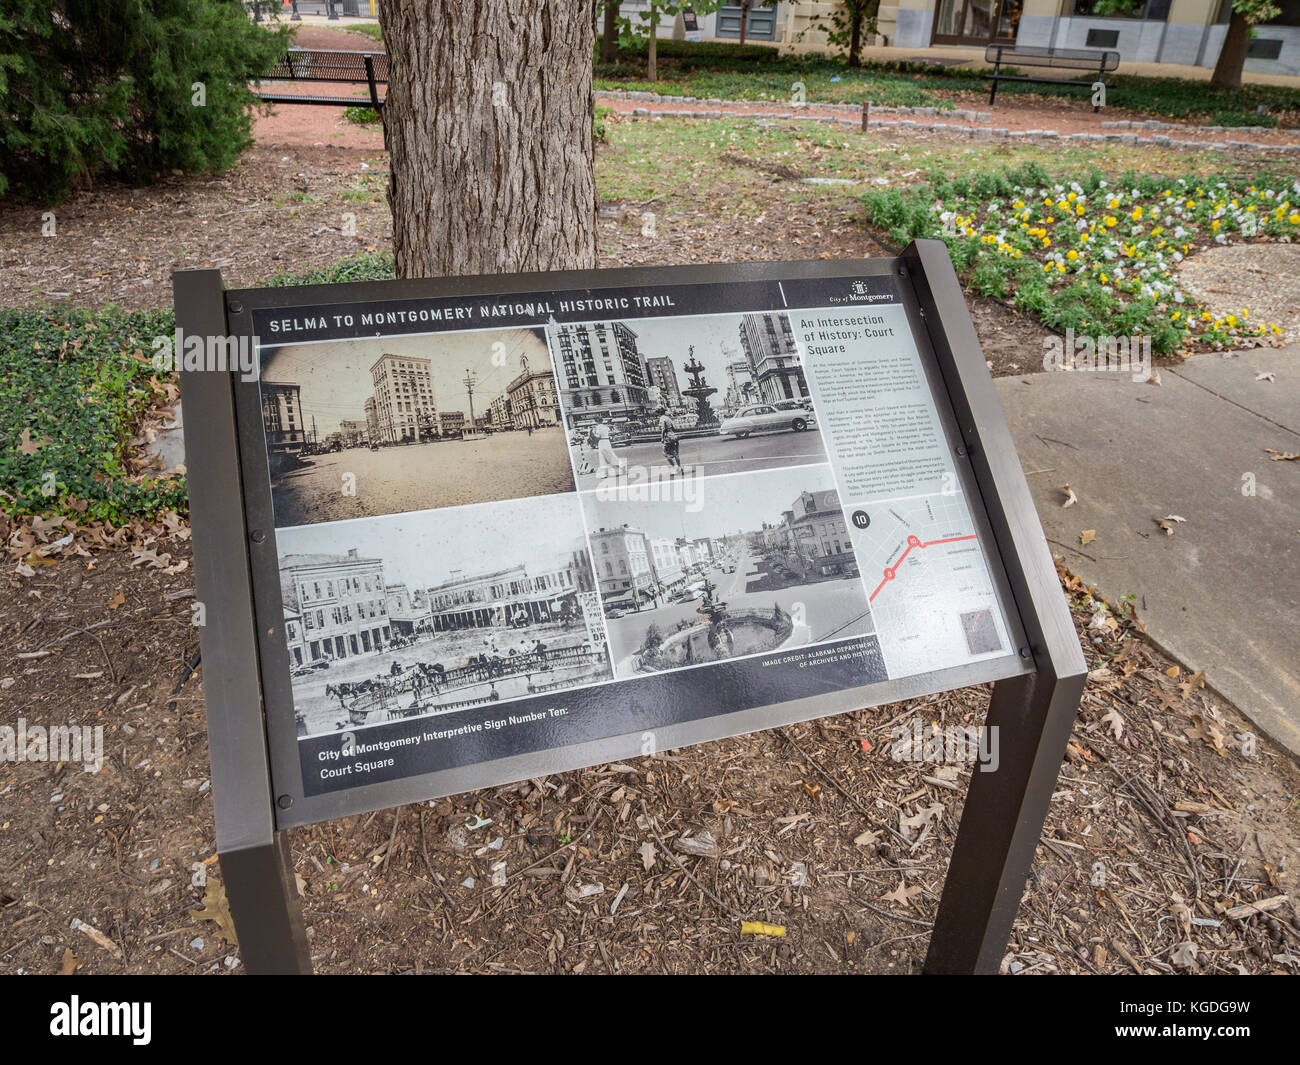 Signo interpretativo en court square, Montgomery, Alabama, EE.UU., mostrando la Selma a Montgomery National Historic trail con fotos y un mapa. Foto de stock